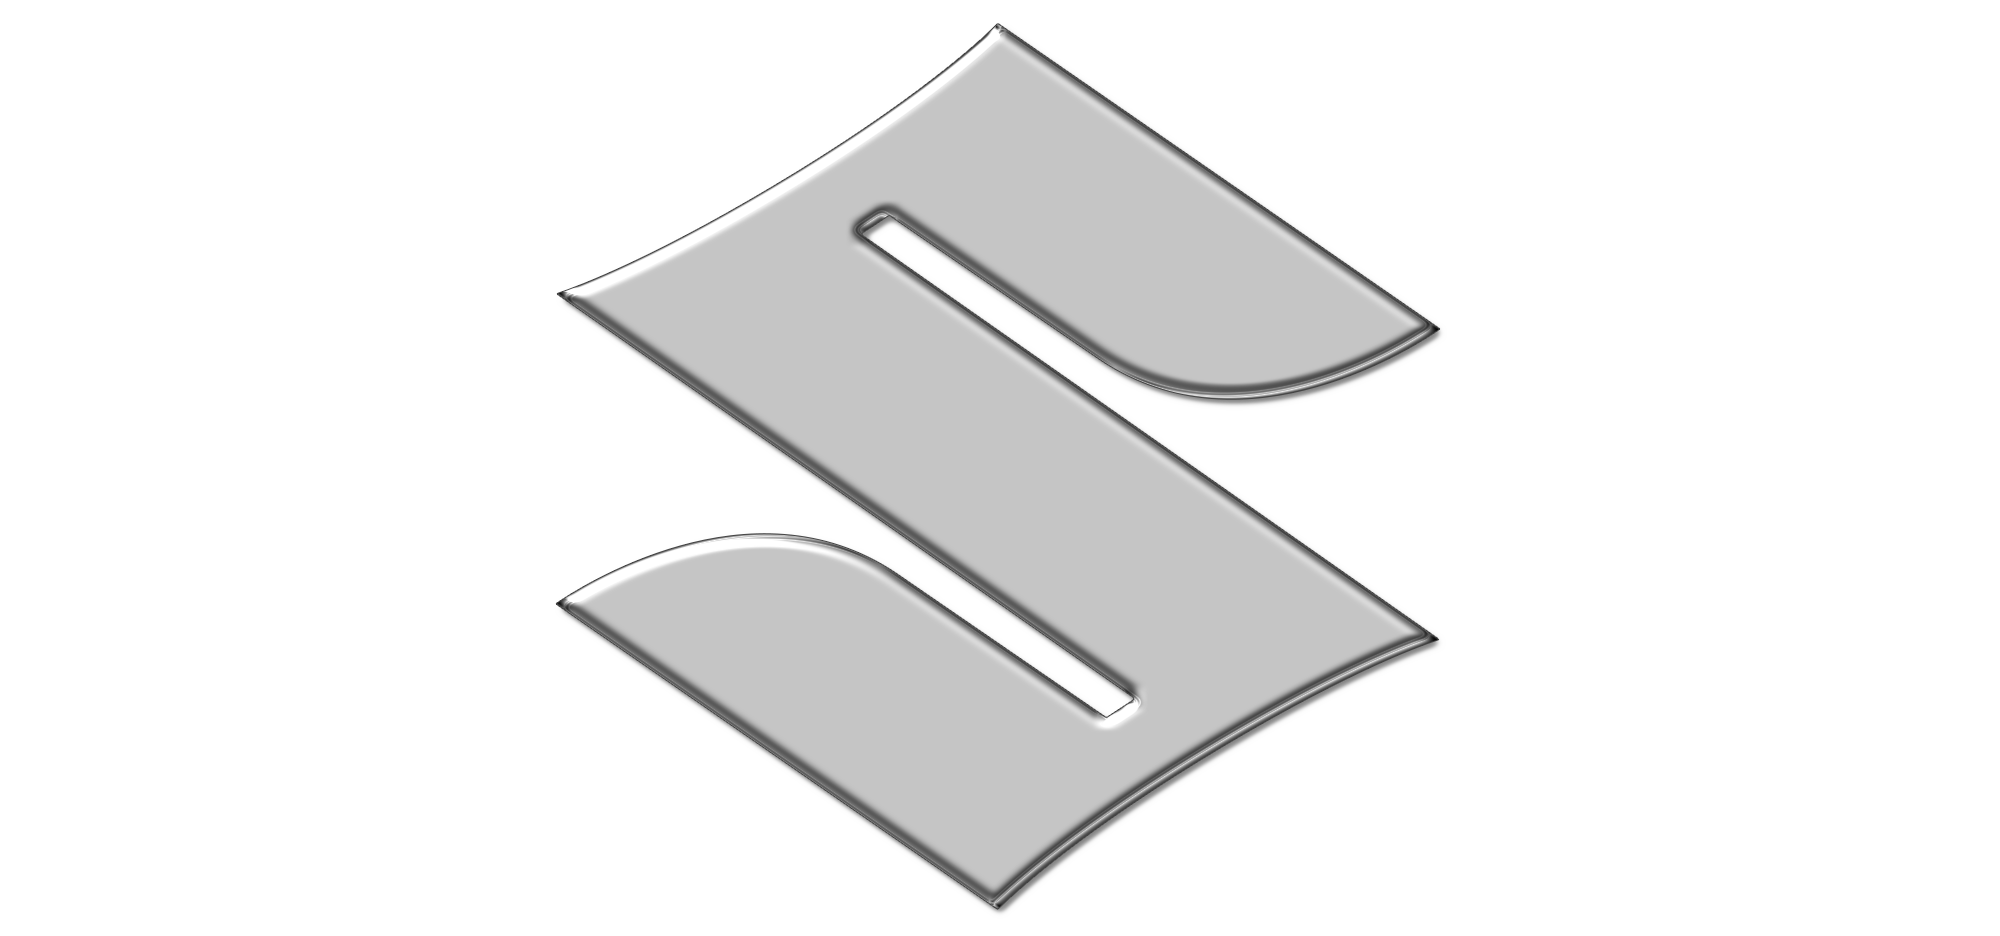 Suzuki Symbol Free PNG Image